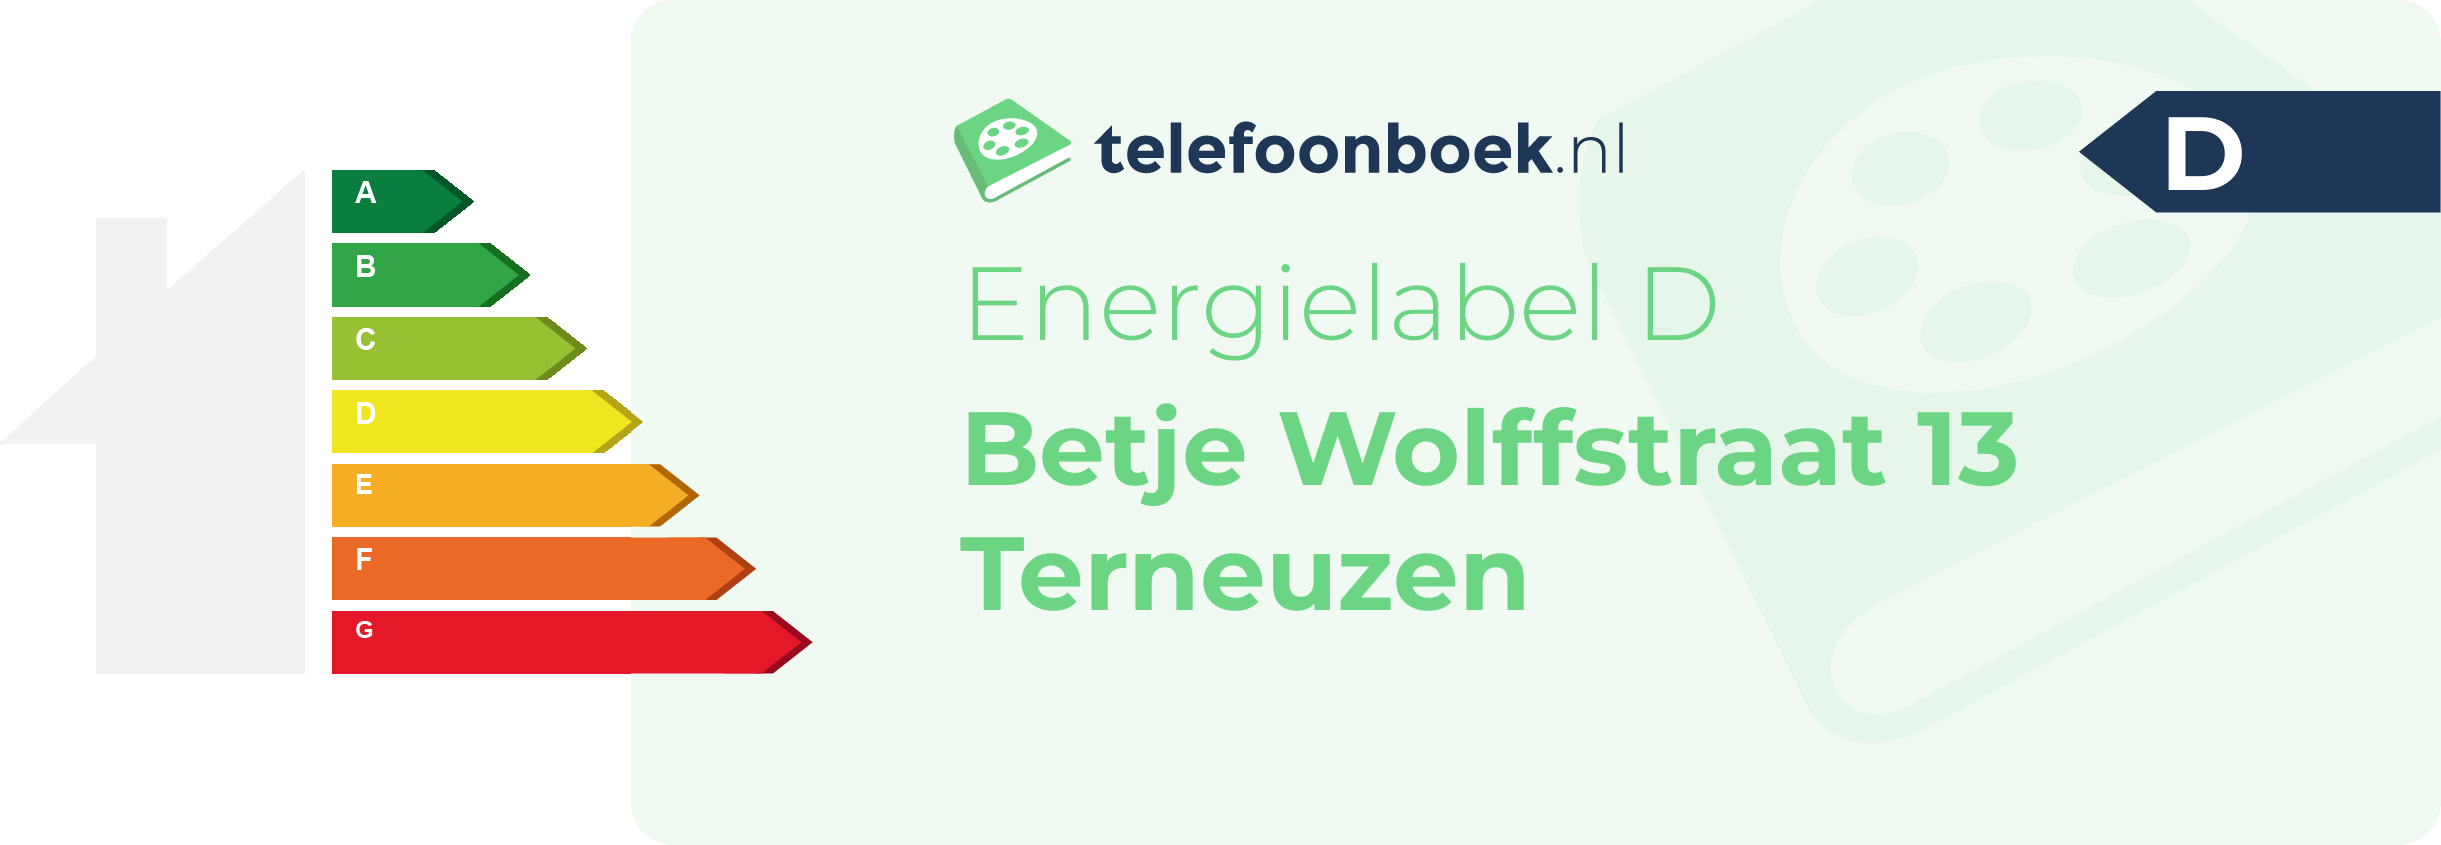 Energielabel Betje Wolffstraat 13 Terneuzen